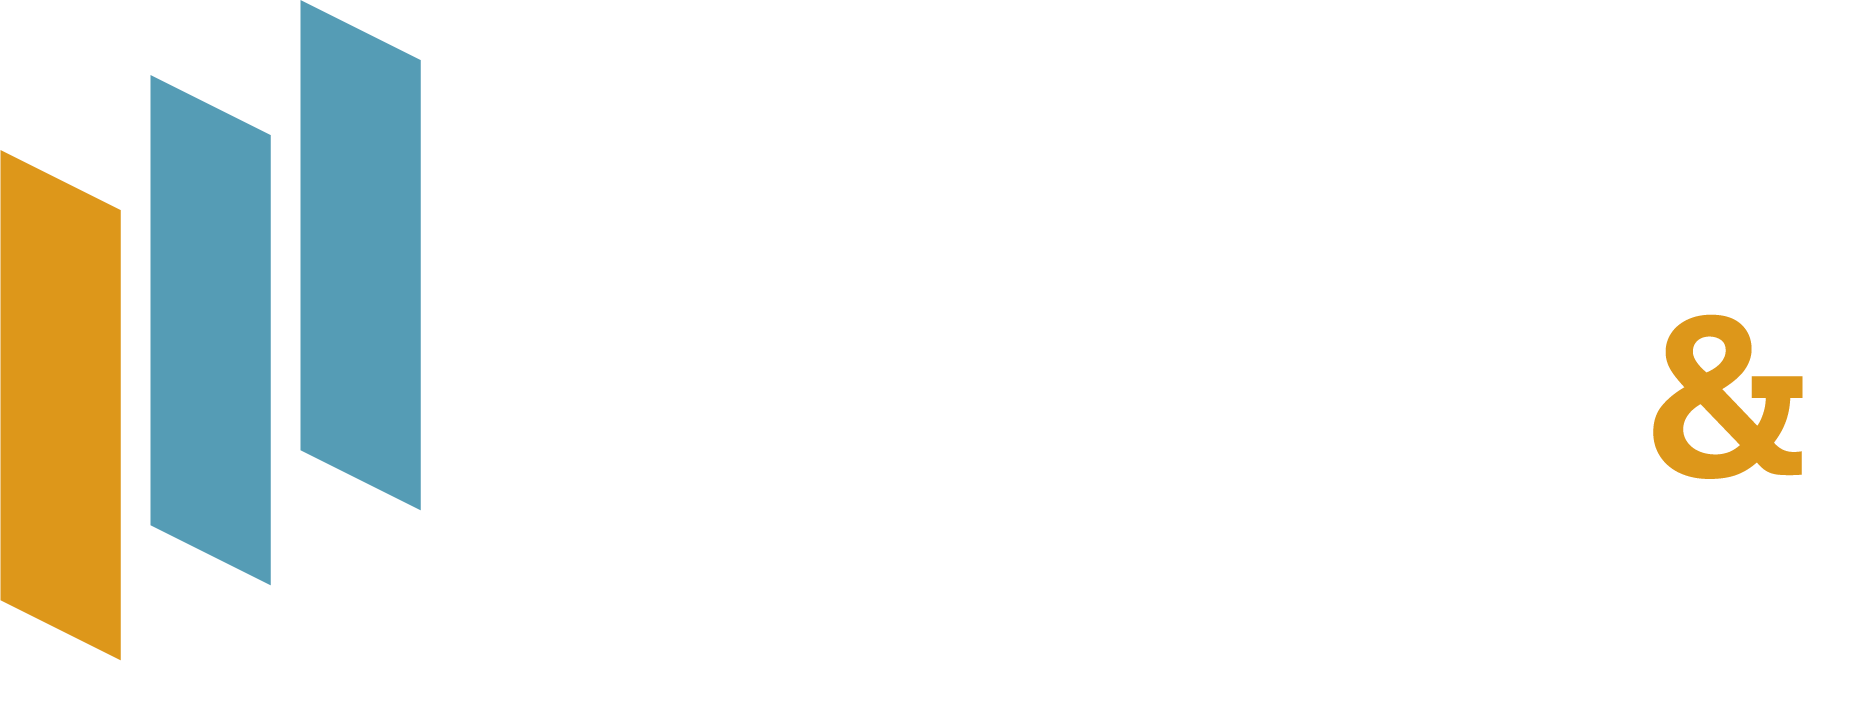 Institute for Citizens & Scholars